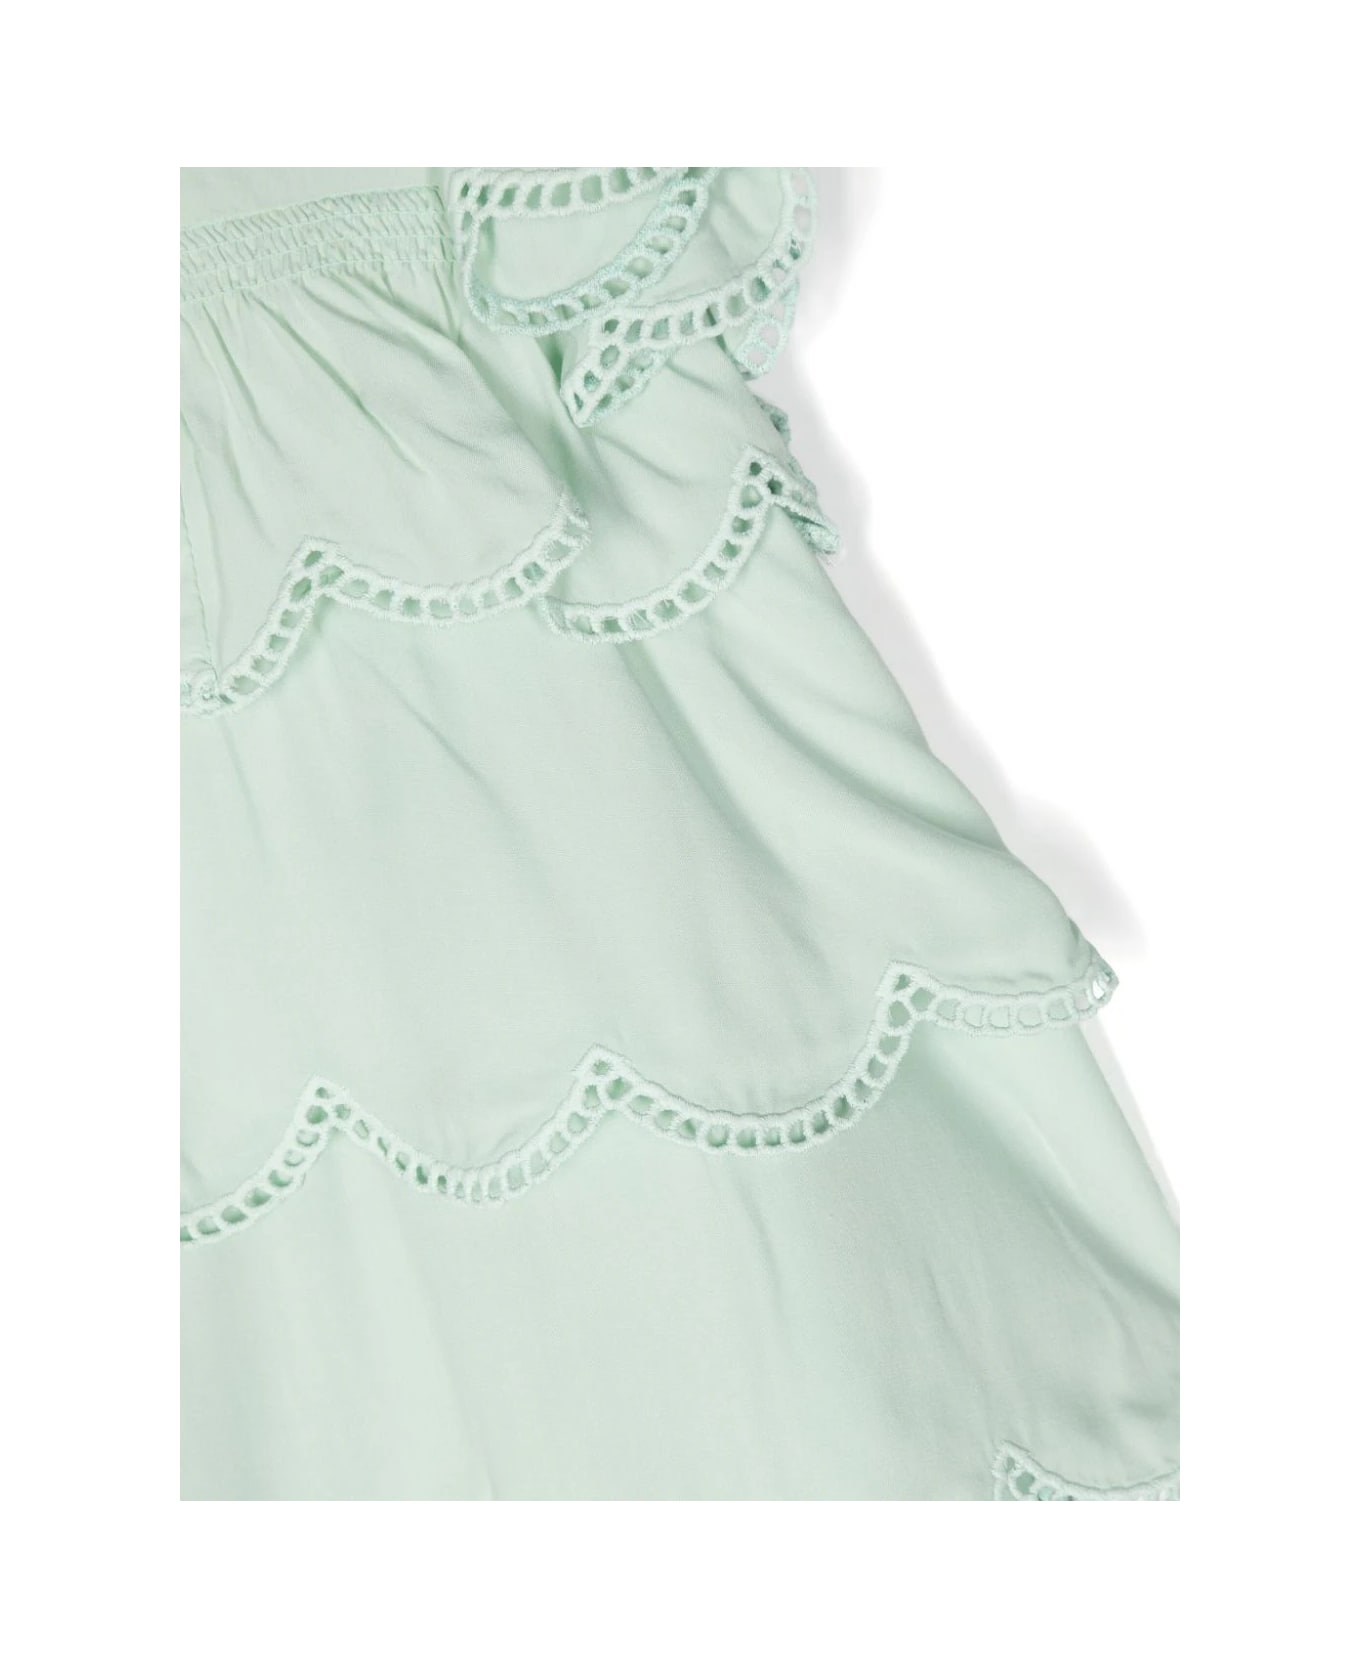 Stella McCartney Kids Green Ruffle Dress With Scalloped Hem - Green